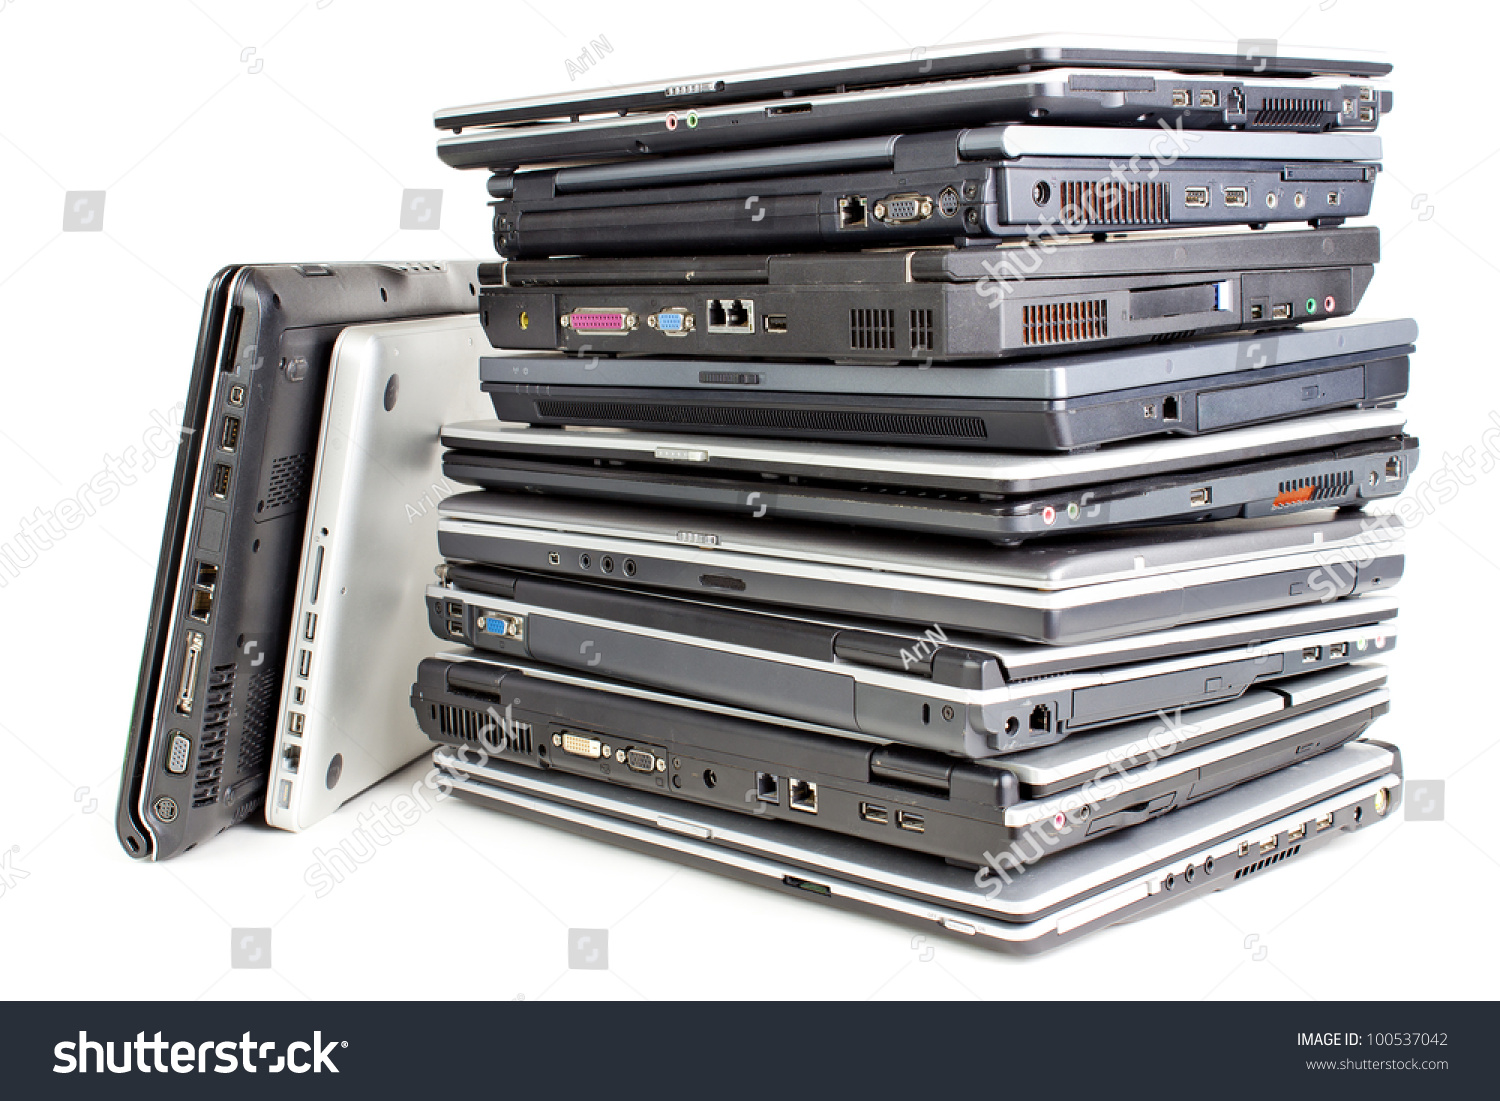 http://image.shutterstock.com/z/stock-photo-pile-of-used-laptops-white-background-100537042.jpg